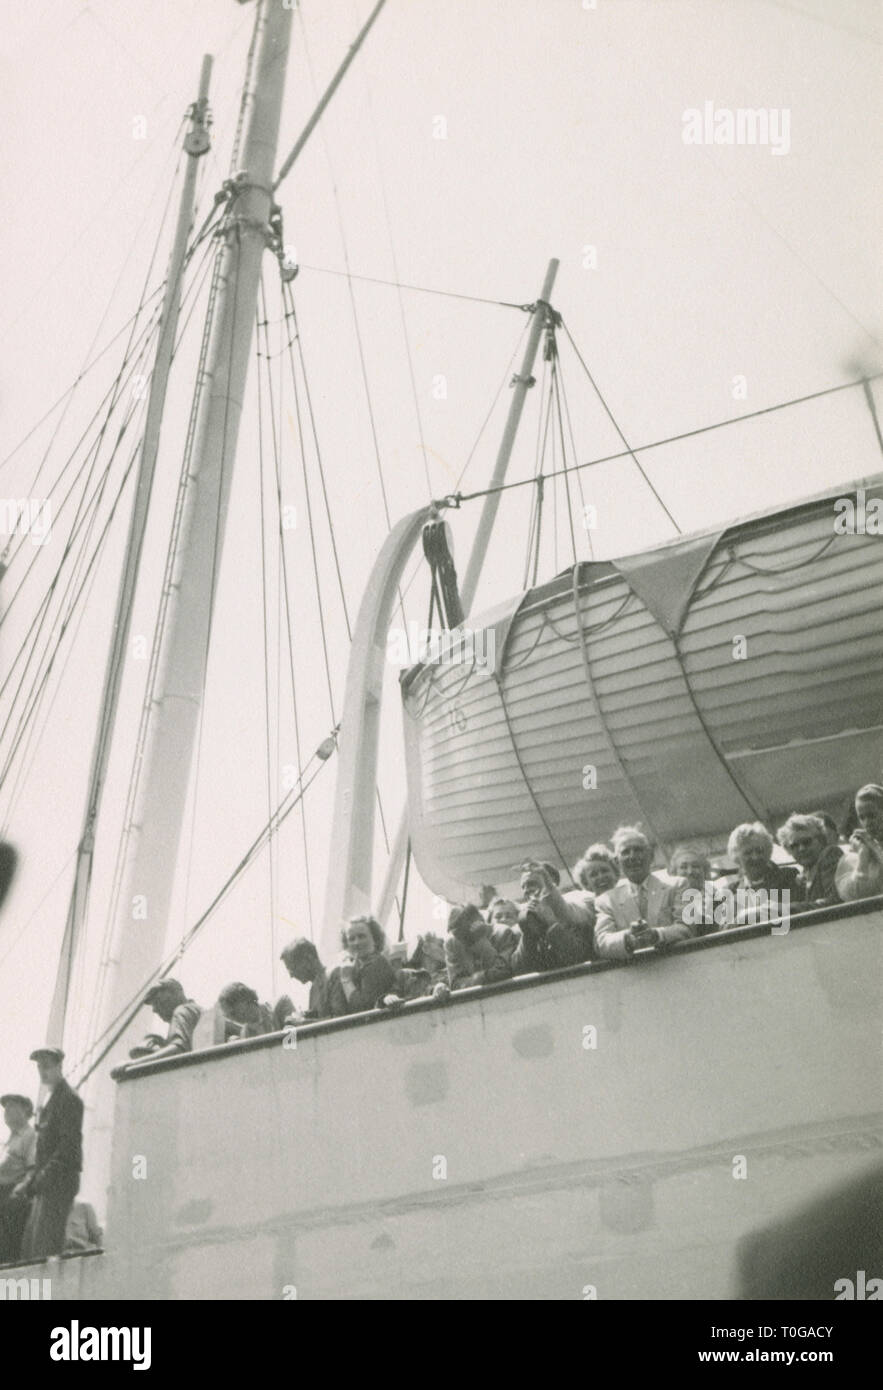 Antique c1930 fotografia, i viaggiatori al rail di un battello a vapore in arrivo. Posizione sconosciuta, STATI UNITI D'AMERICA. Fonte: fotografia originale. Foto Stock